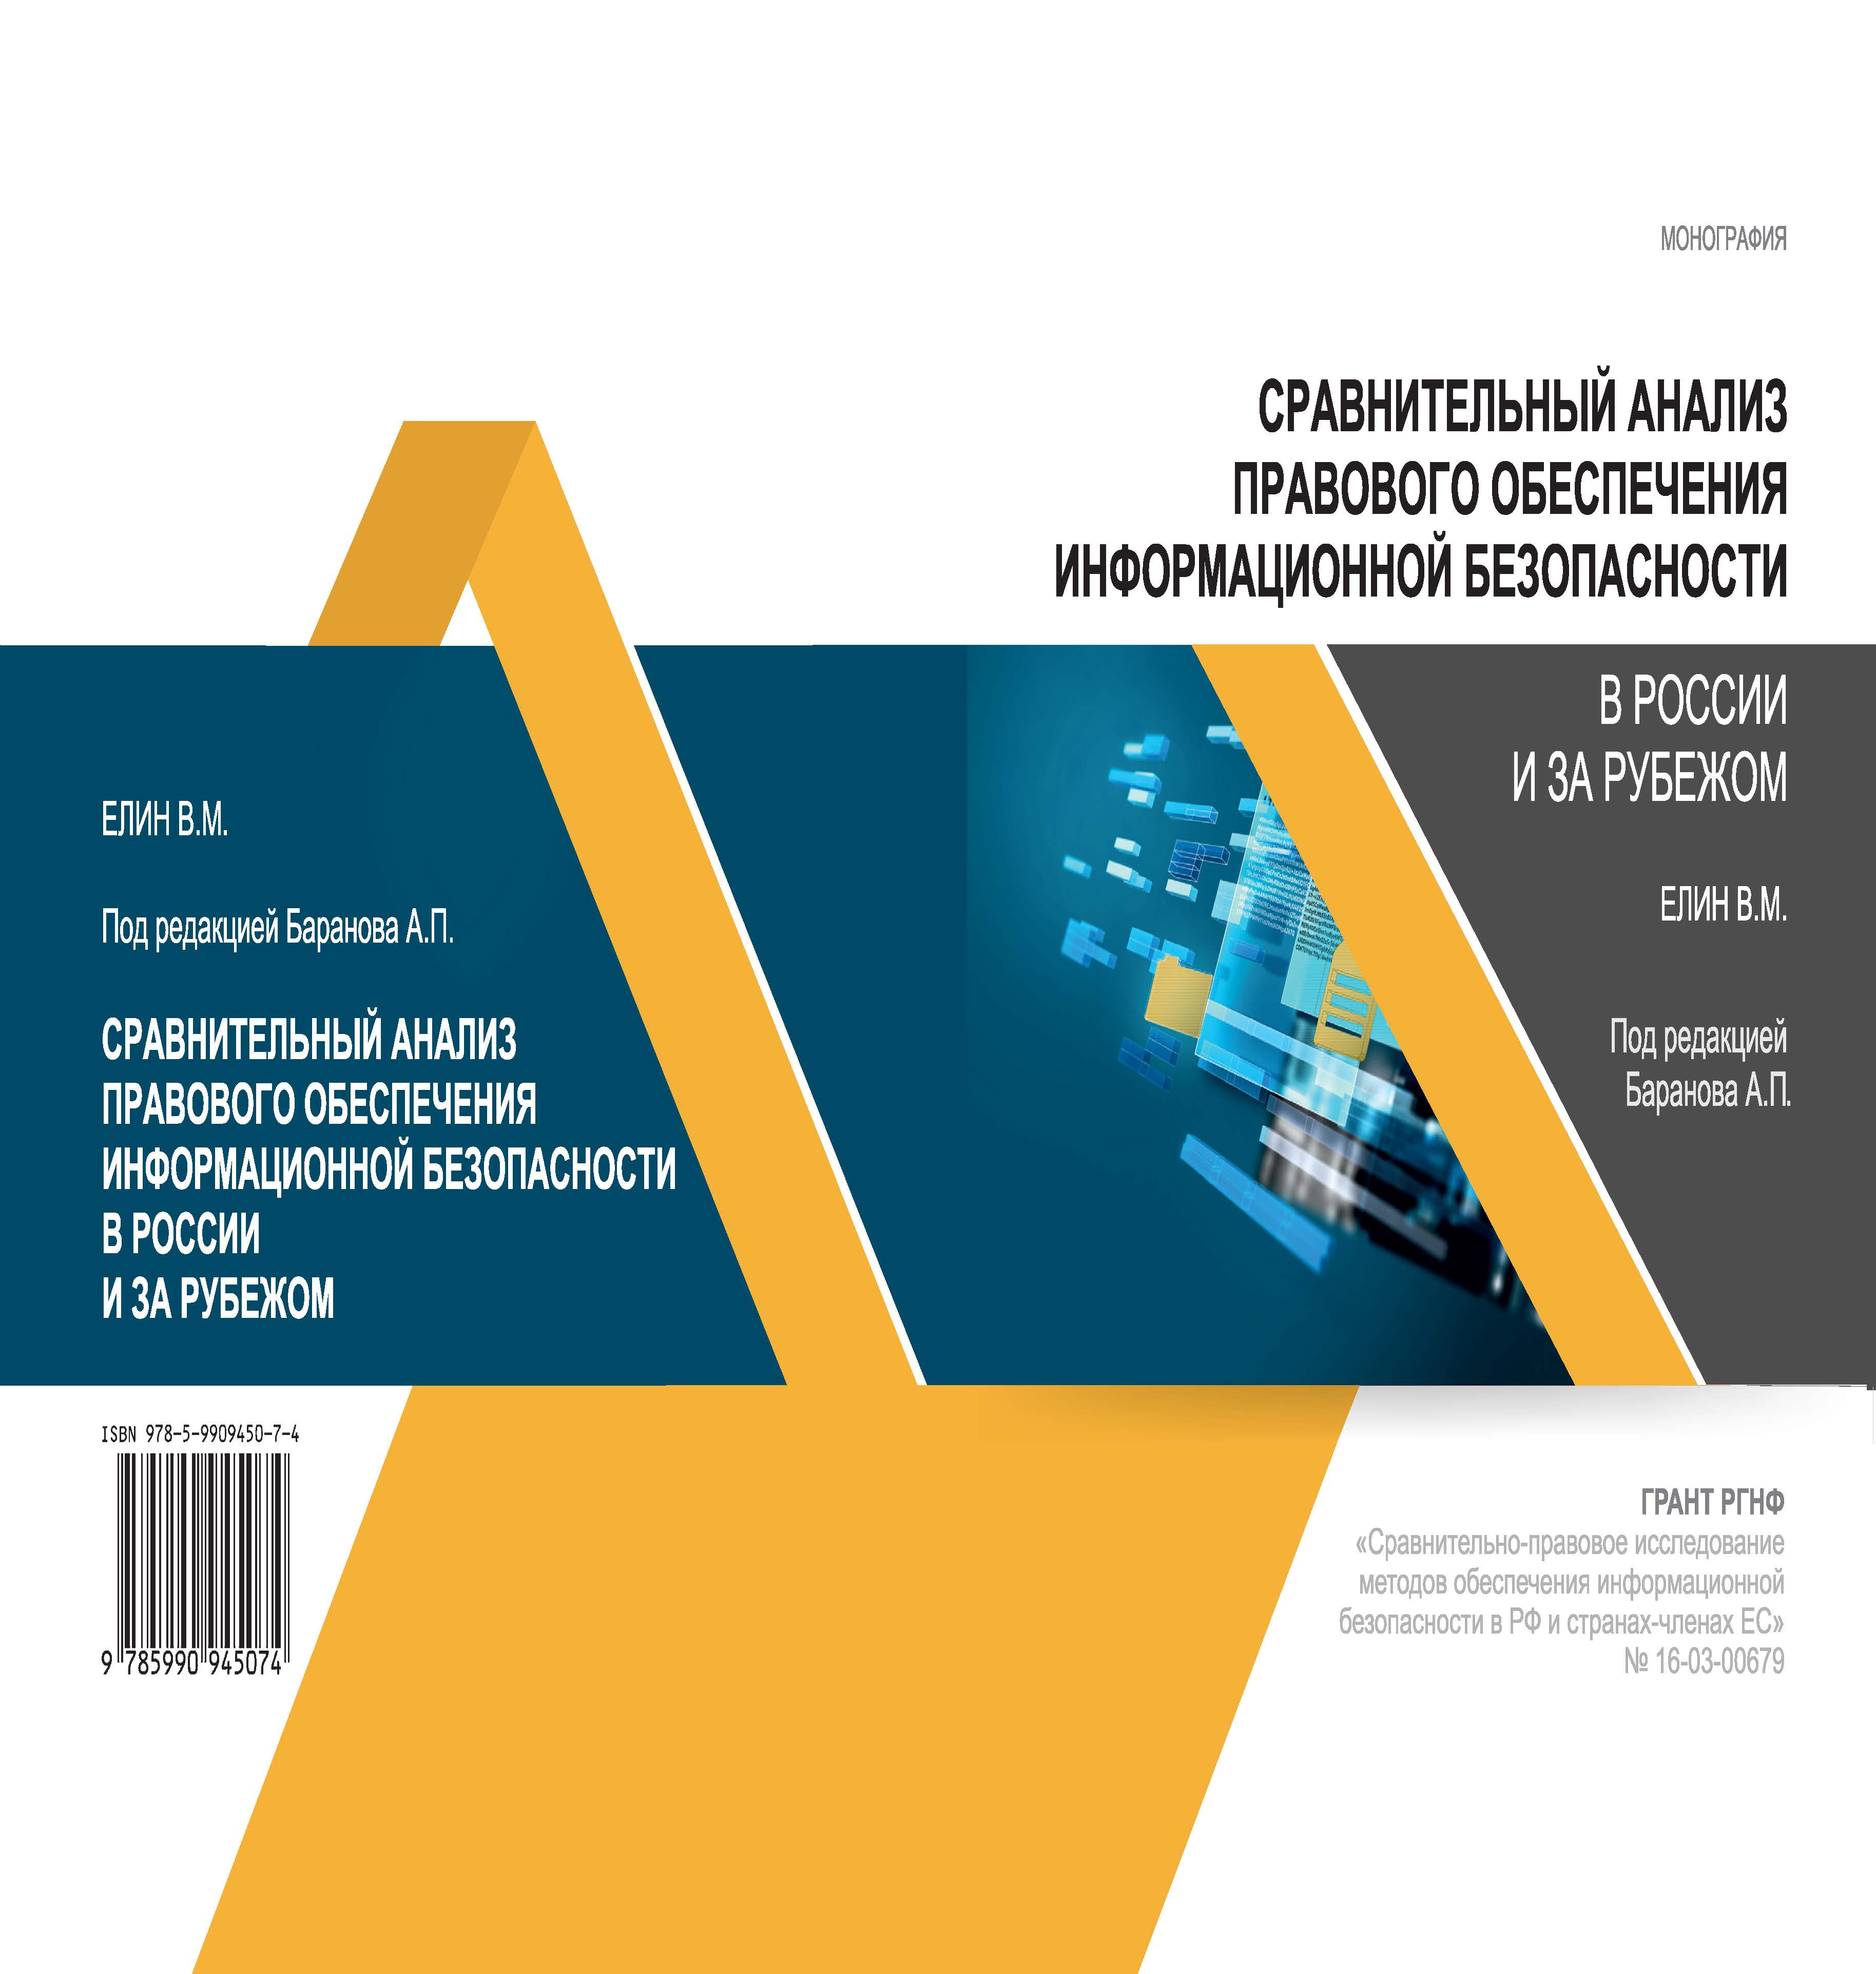 Сравнительный анализ правового обеспечения информационной безопасности в России и за рубежом